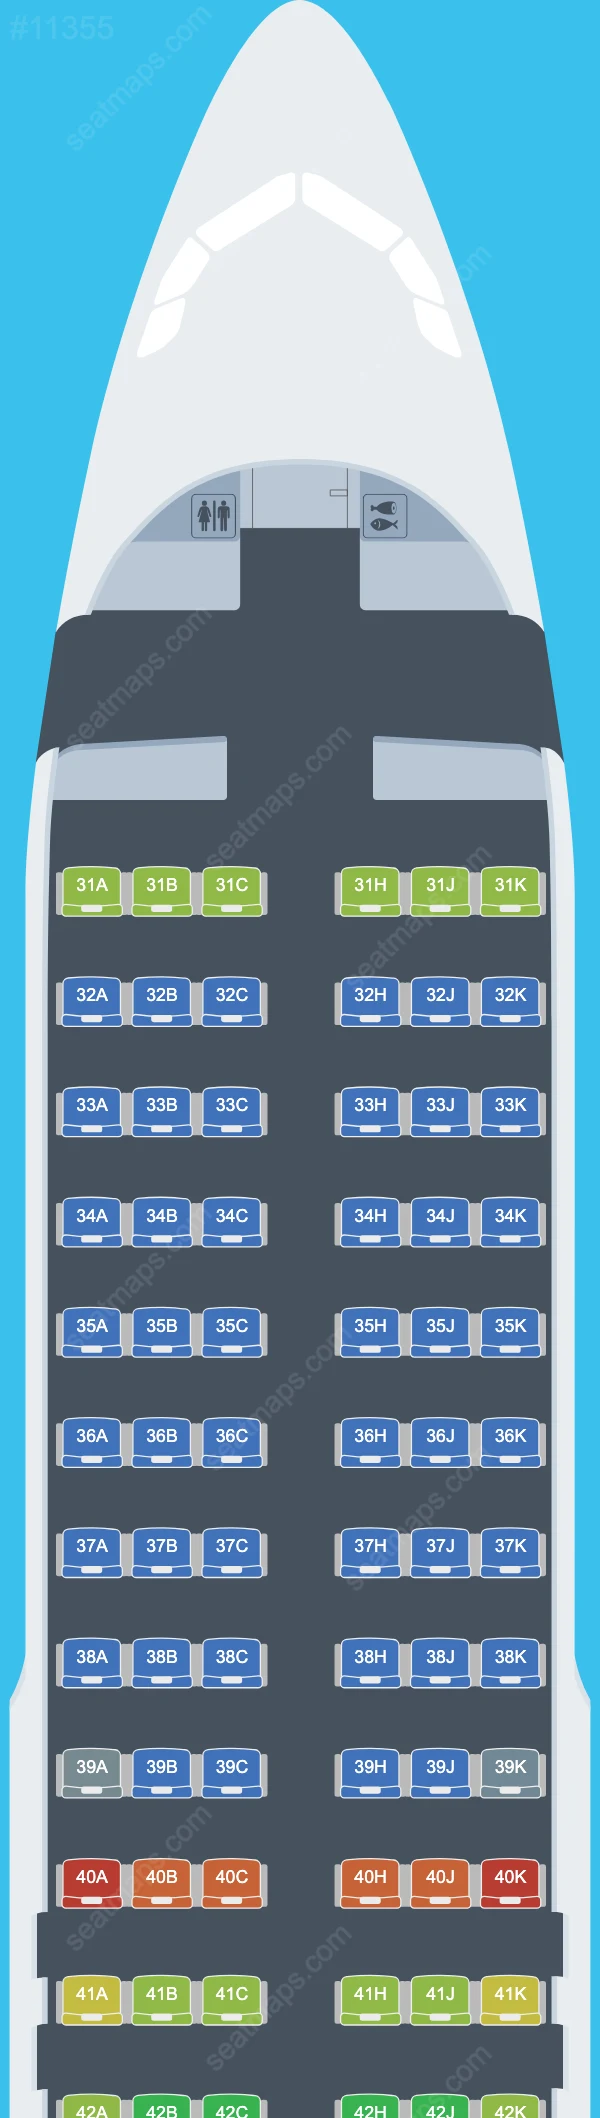 Thai Airways International Airbus A320 Seat Maps A320-200 V.1